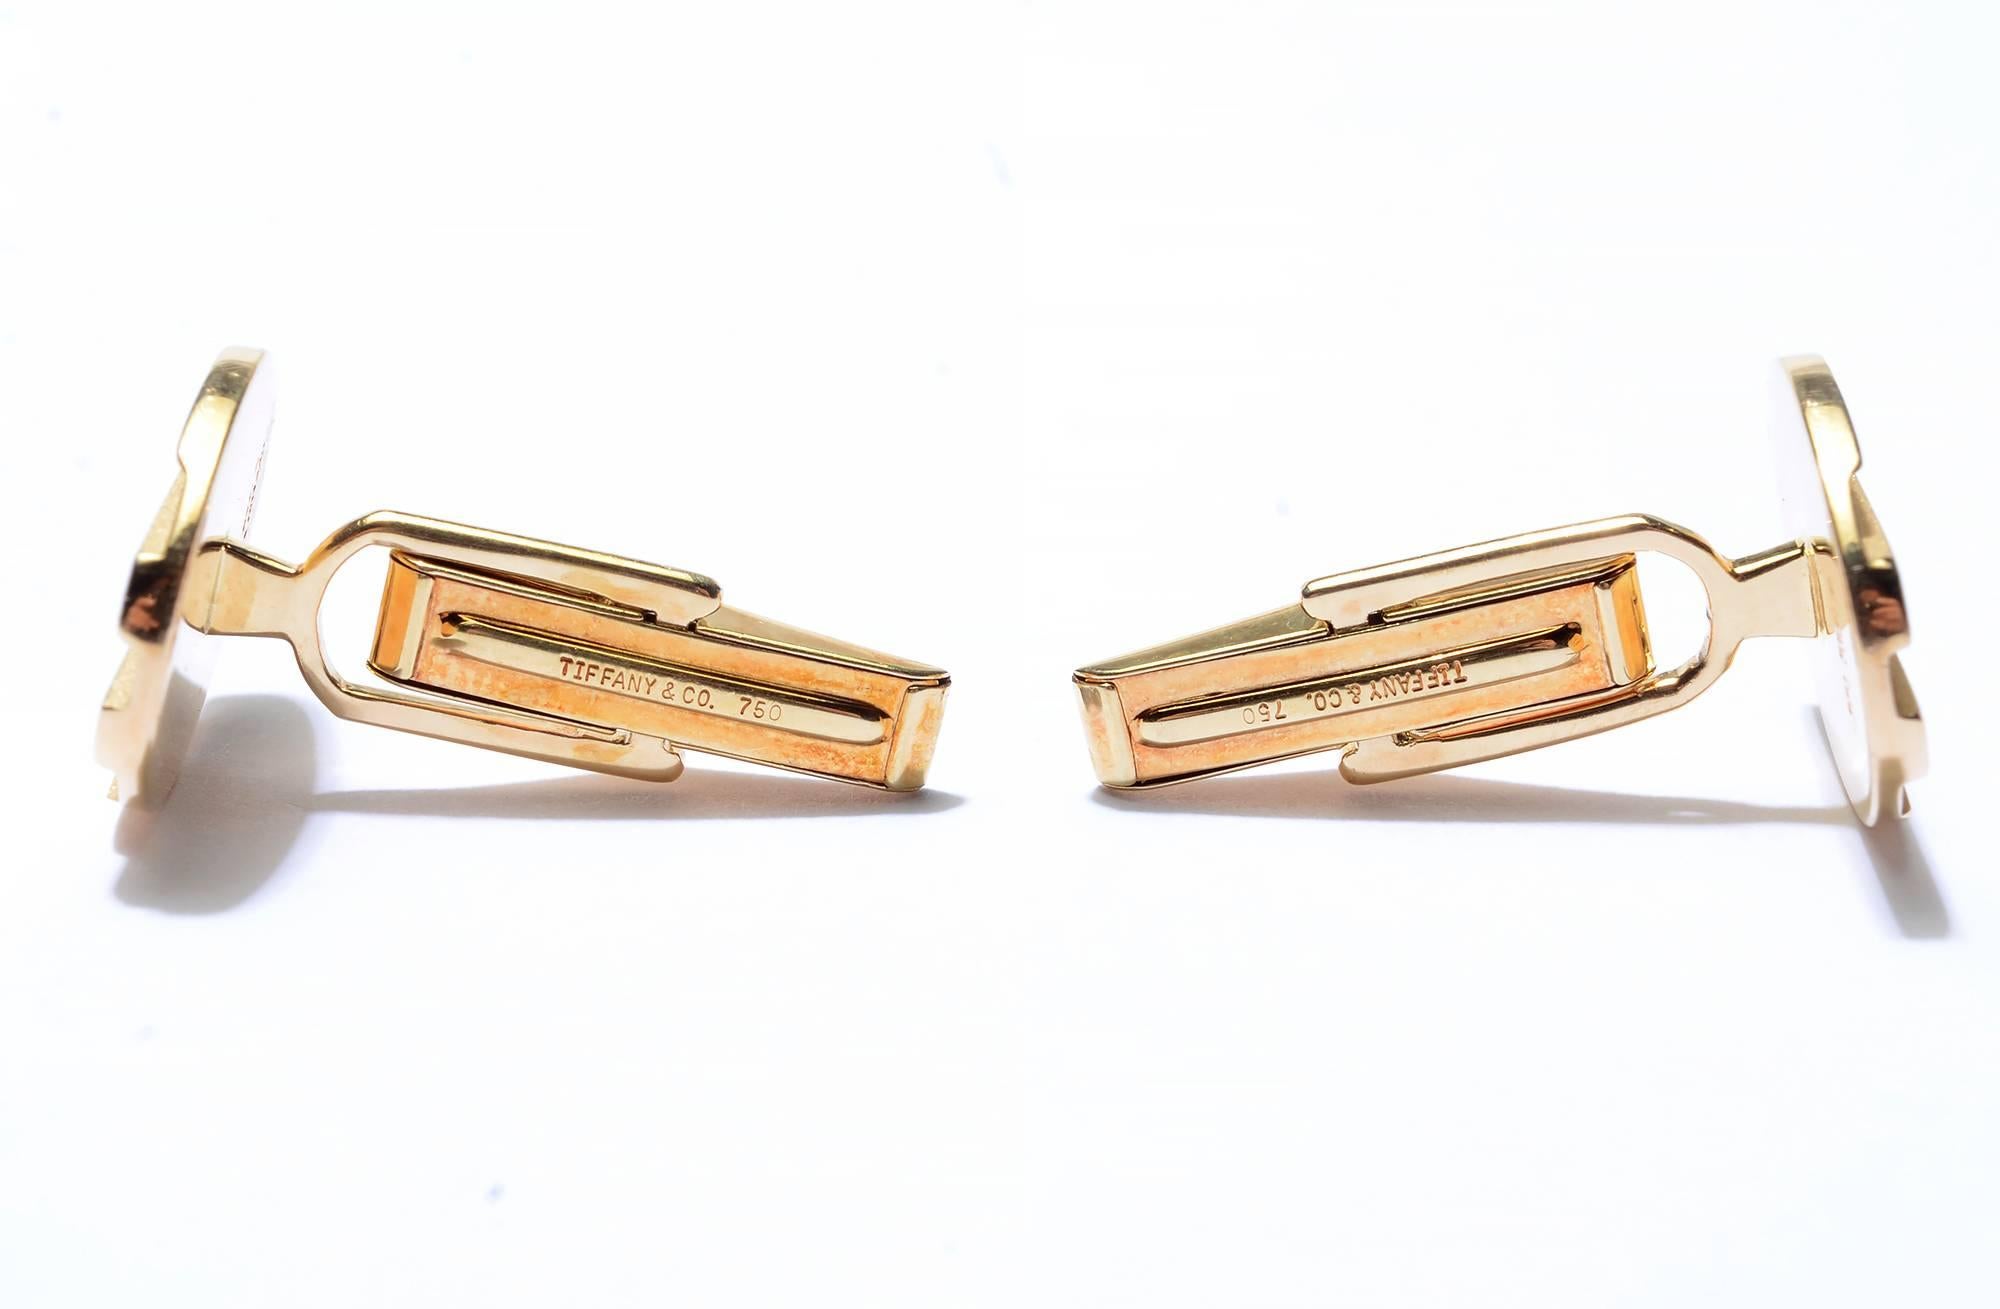 Maßgeschneiderte Manschettenknöpfe aus achtzehn Karat Gold von Tiffany & Co. Sie haben zwei verschiedene Ausführungen. Die erhabenen Stäbe sind glänzend, die unteren Bereiche haben eine feinkörnige Oberfläche. Die Maße sind 3/4